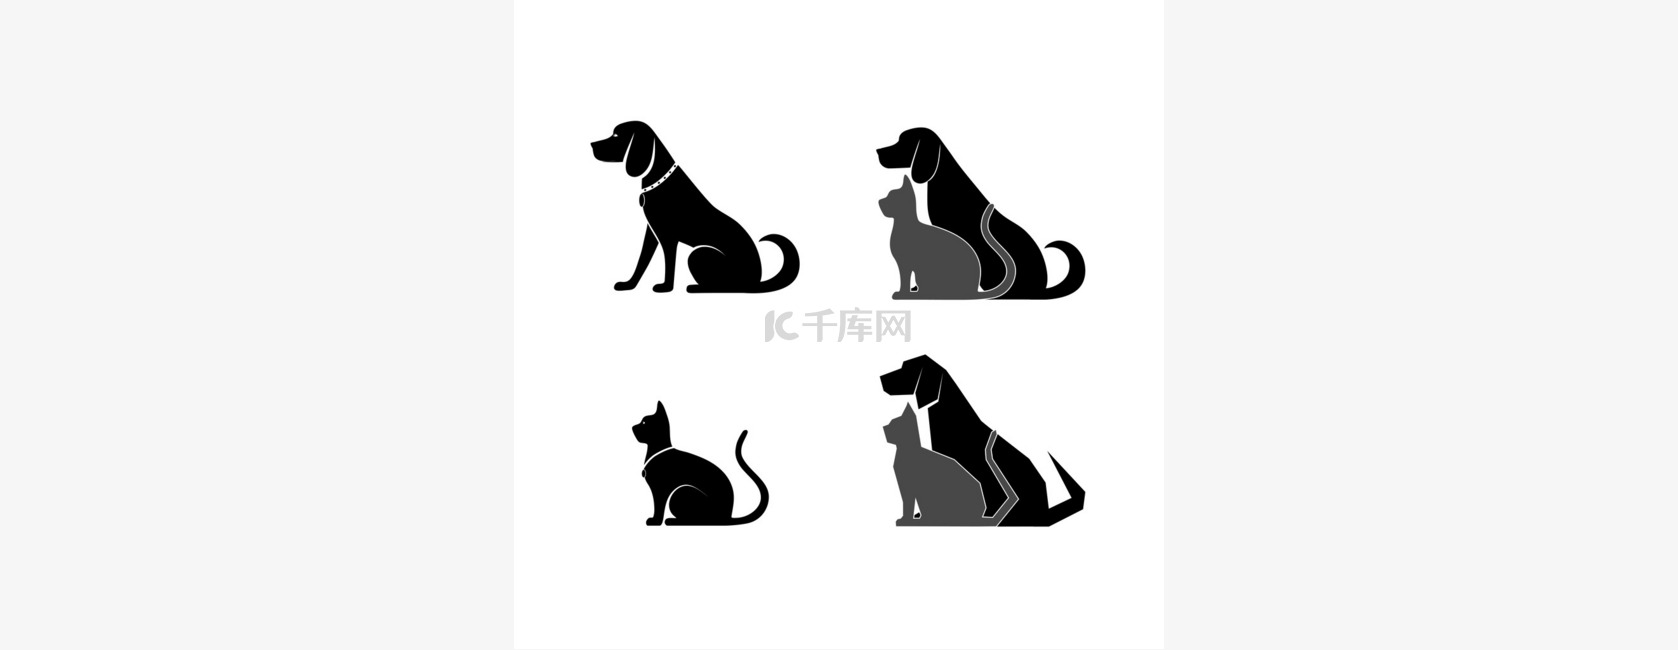 猫和狗为您设计的剪影